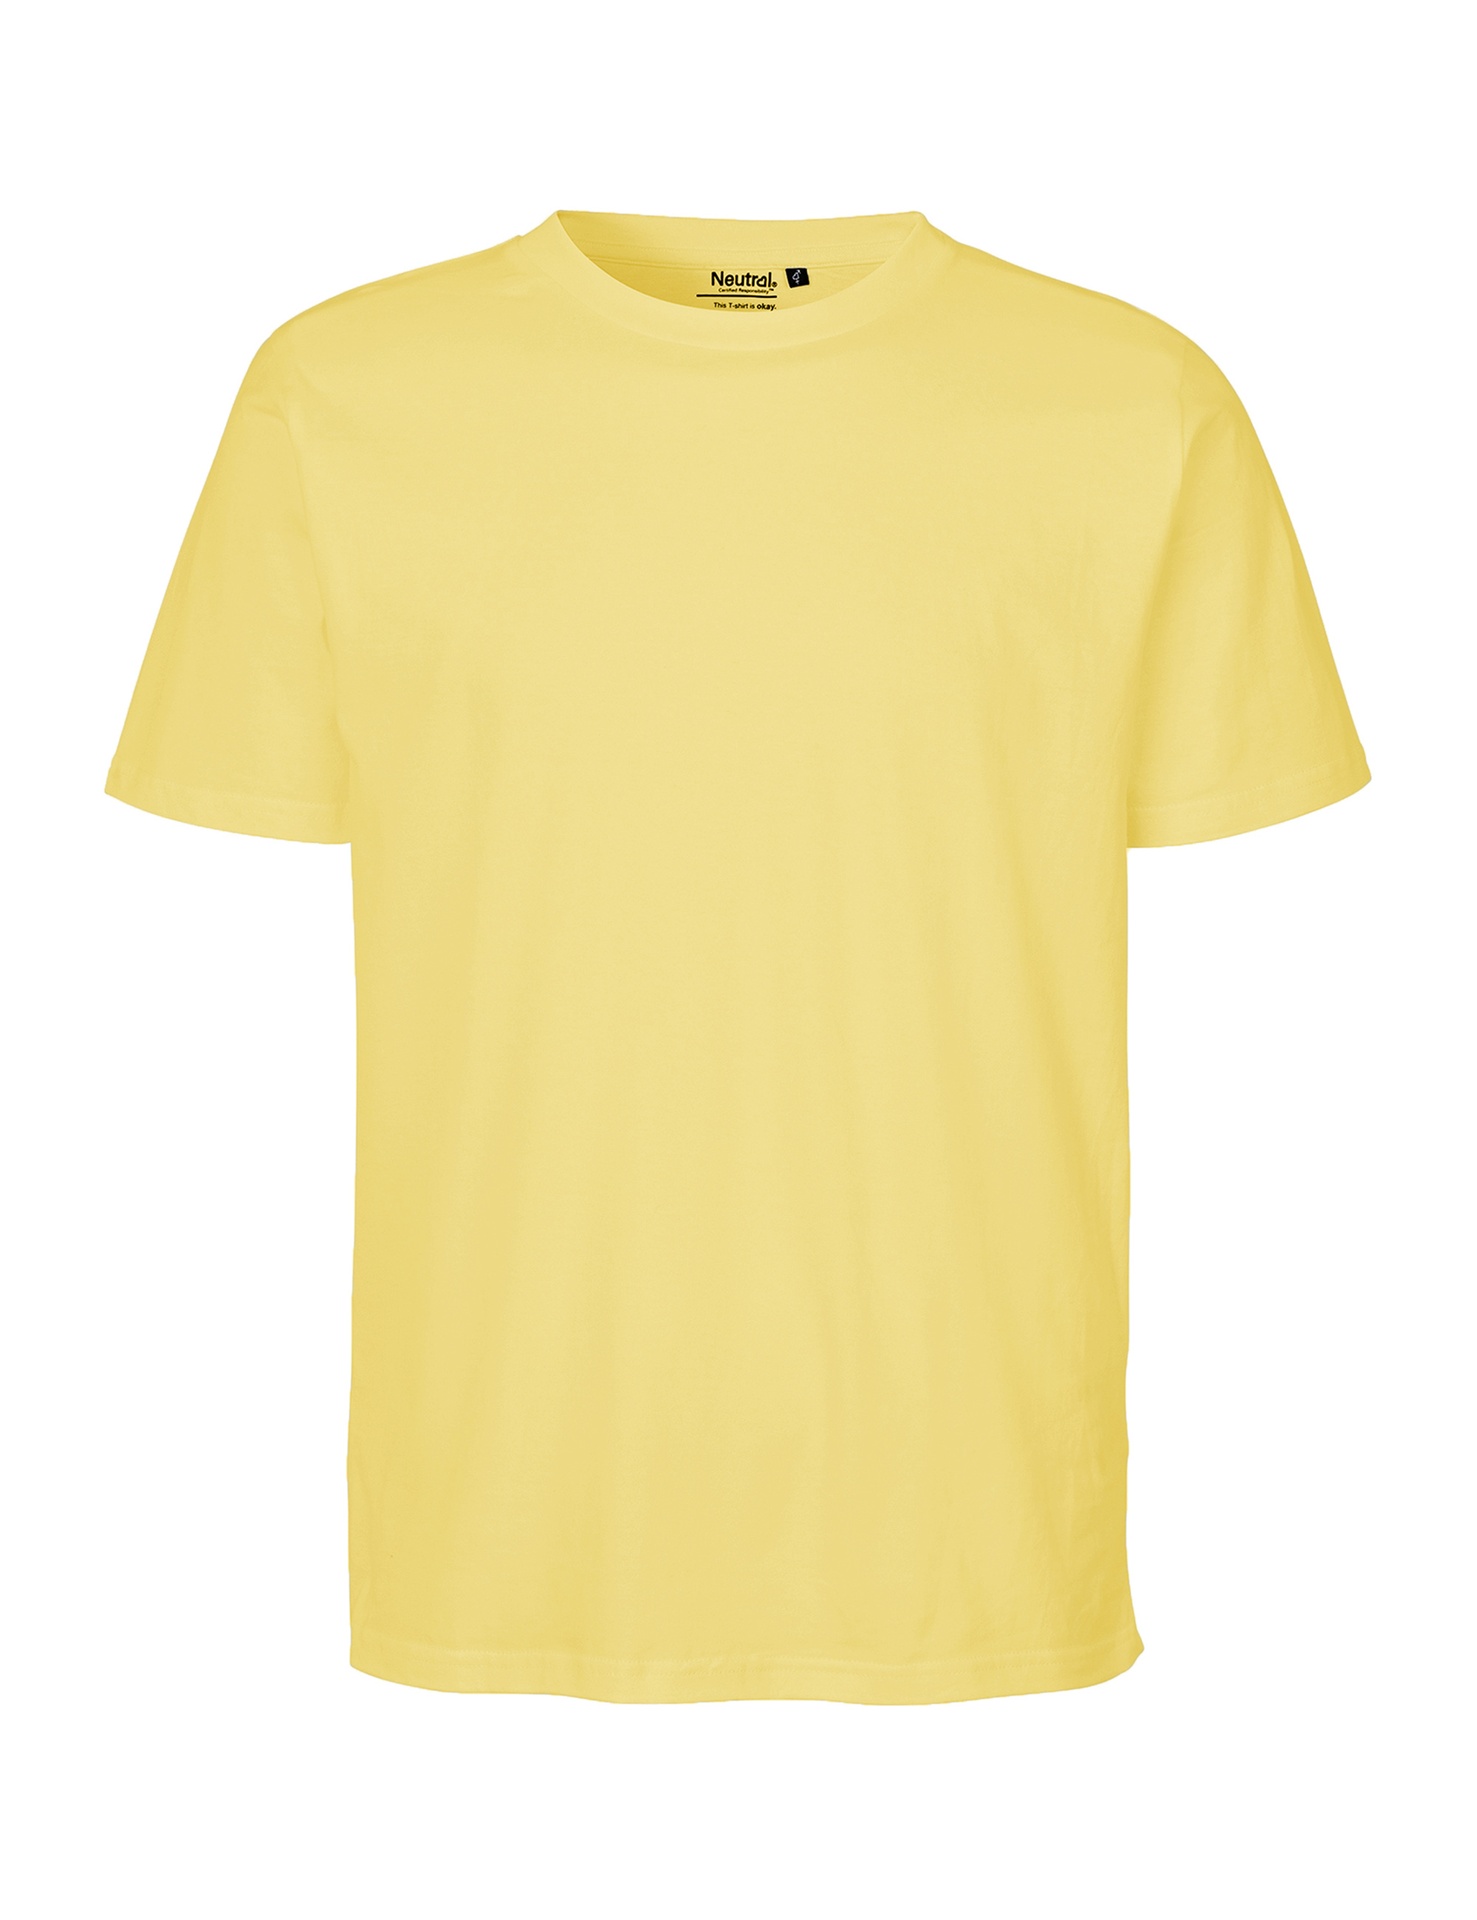 [PR/06632] Unisex Regular T-Shirt (2XL, Dark Heather 08)